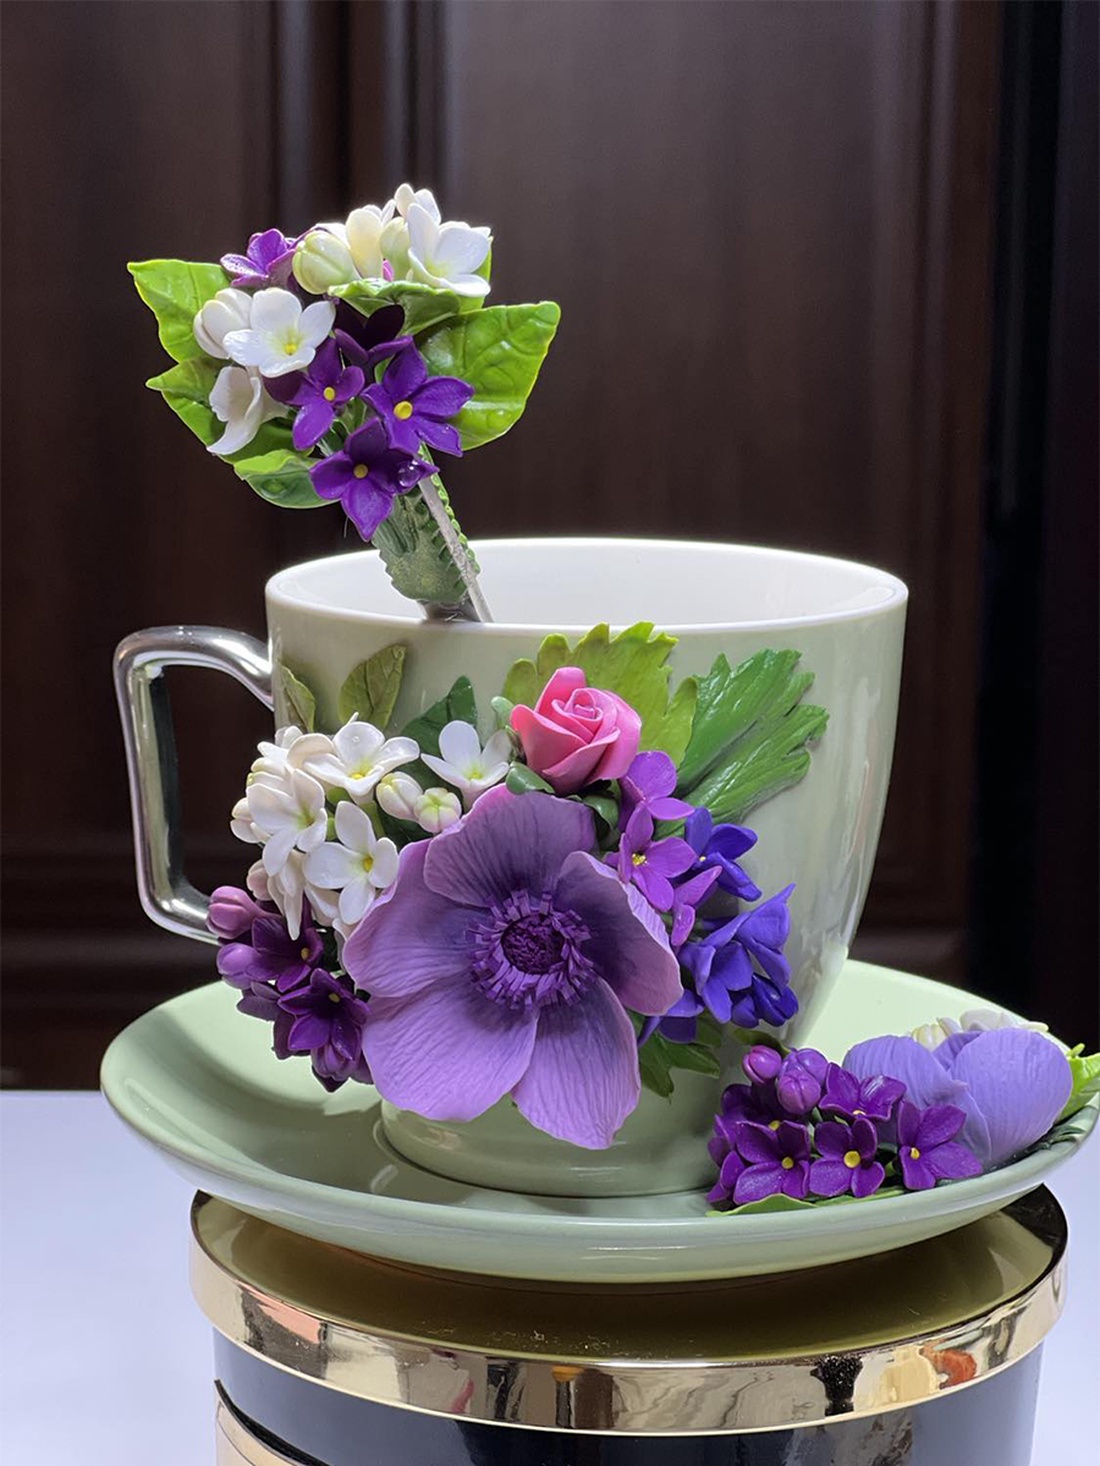 Set cafea/ceai cu farfurioara si lingurita cu flori de liliac si anemona mov - accesorii locuință - accesorii pentru echipamente de bucătărie - accesorii de servire - cești cafea, set ceai - Artynos.ro